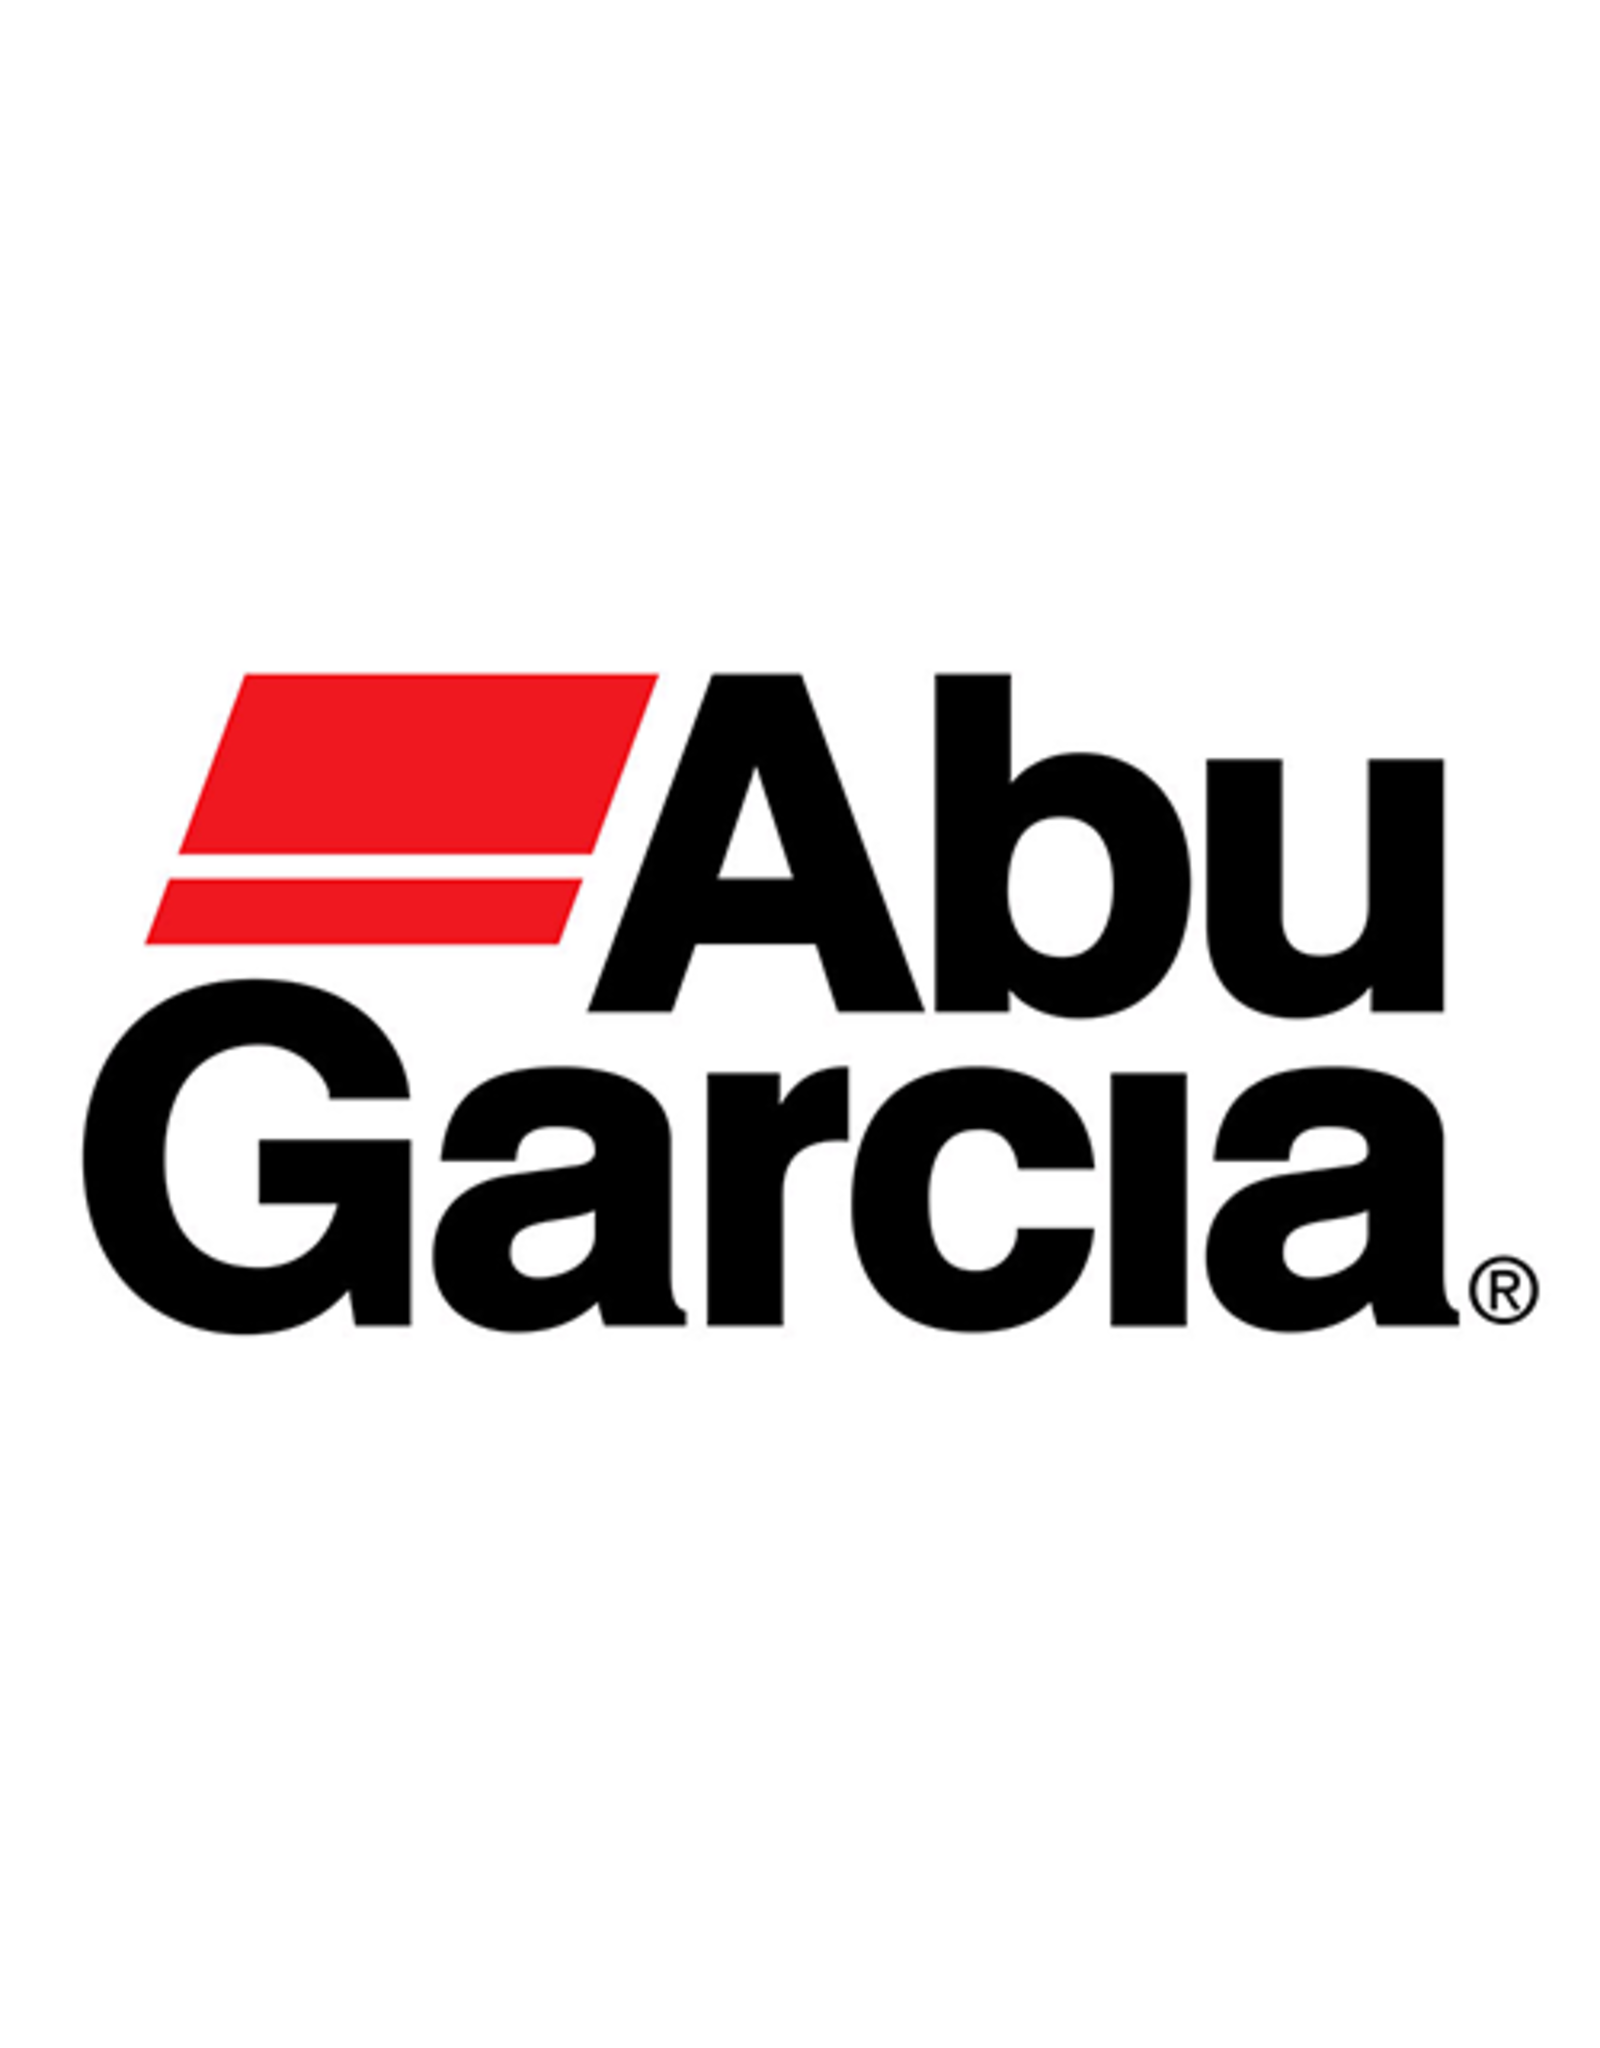 Abu Garcia 813240  RIGHT SIDE PLATE